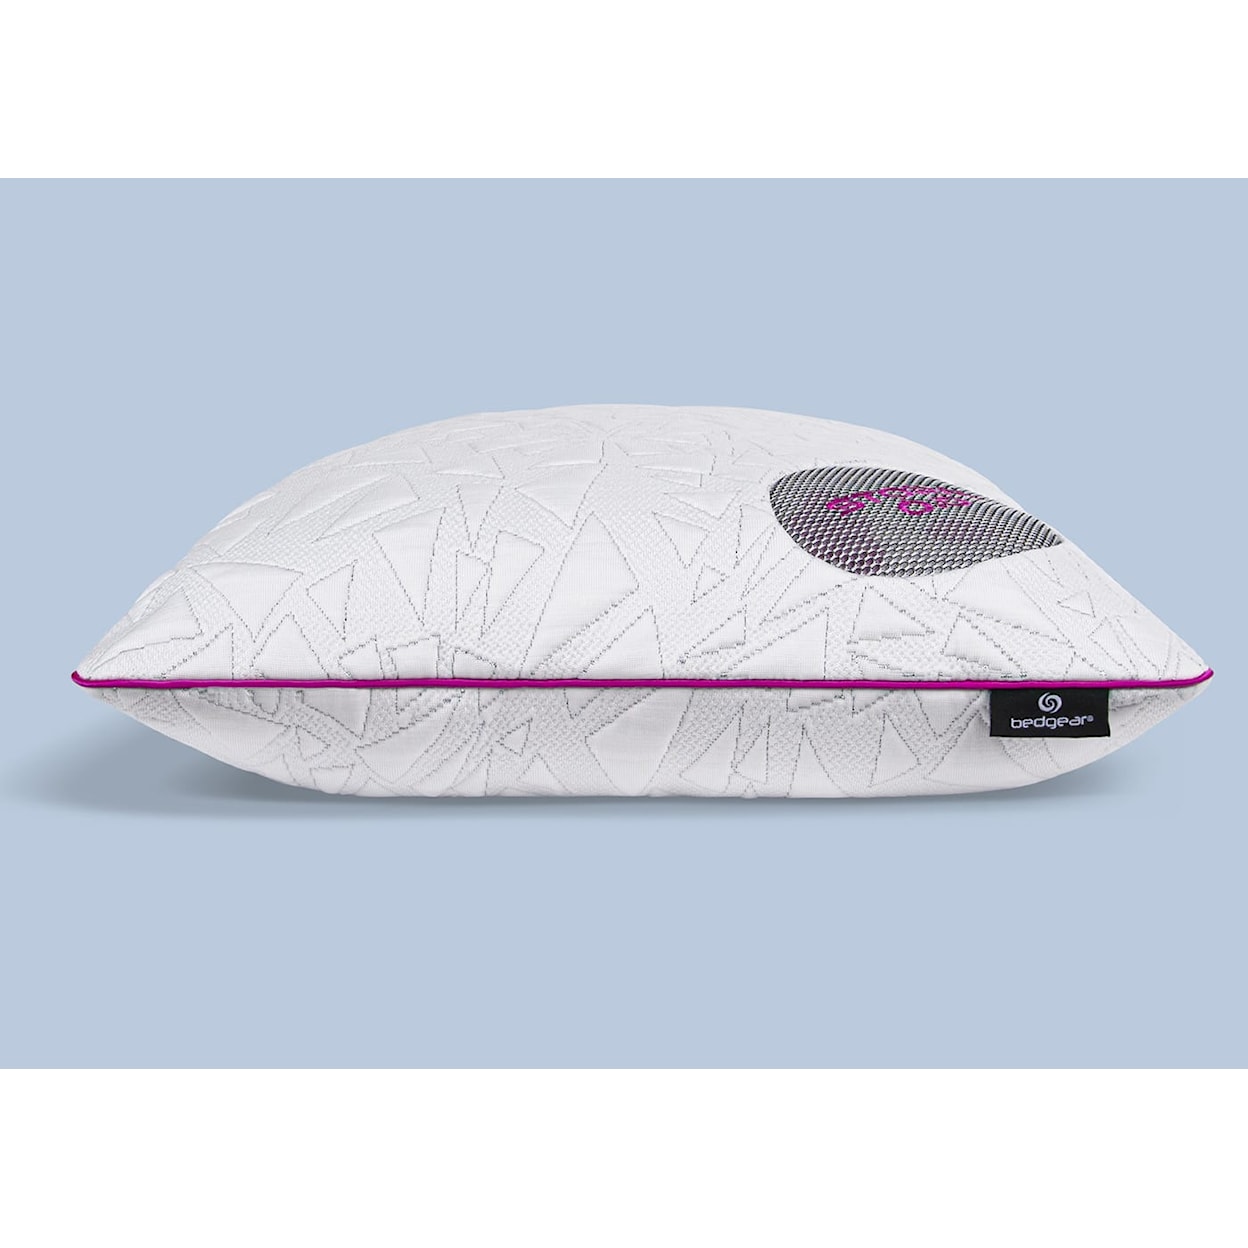 Bedgear Storm Series Pillows Storm 0.0 Cool Pillow XS / S